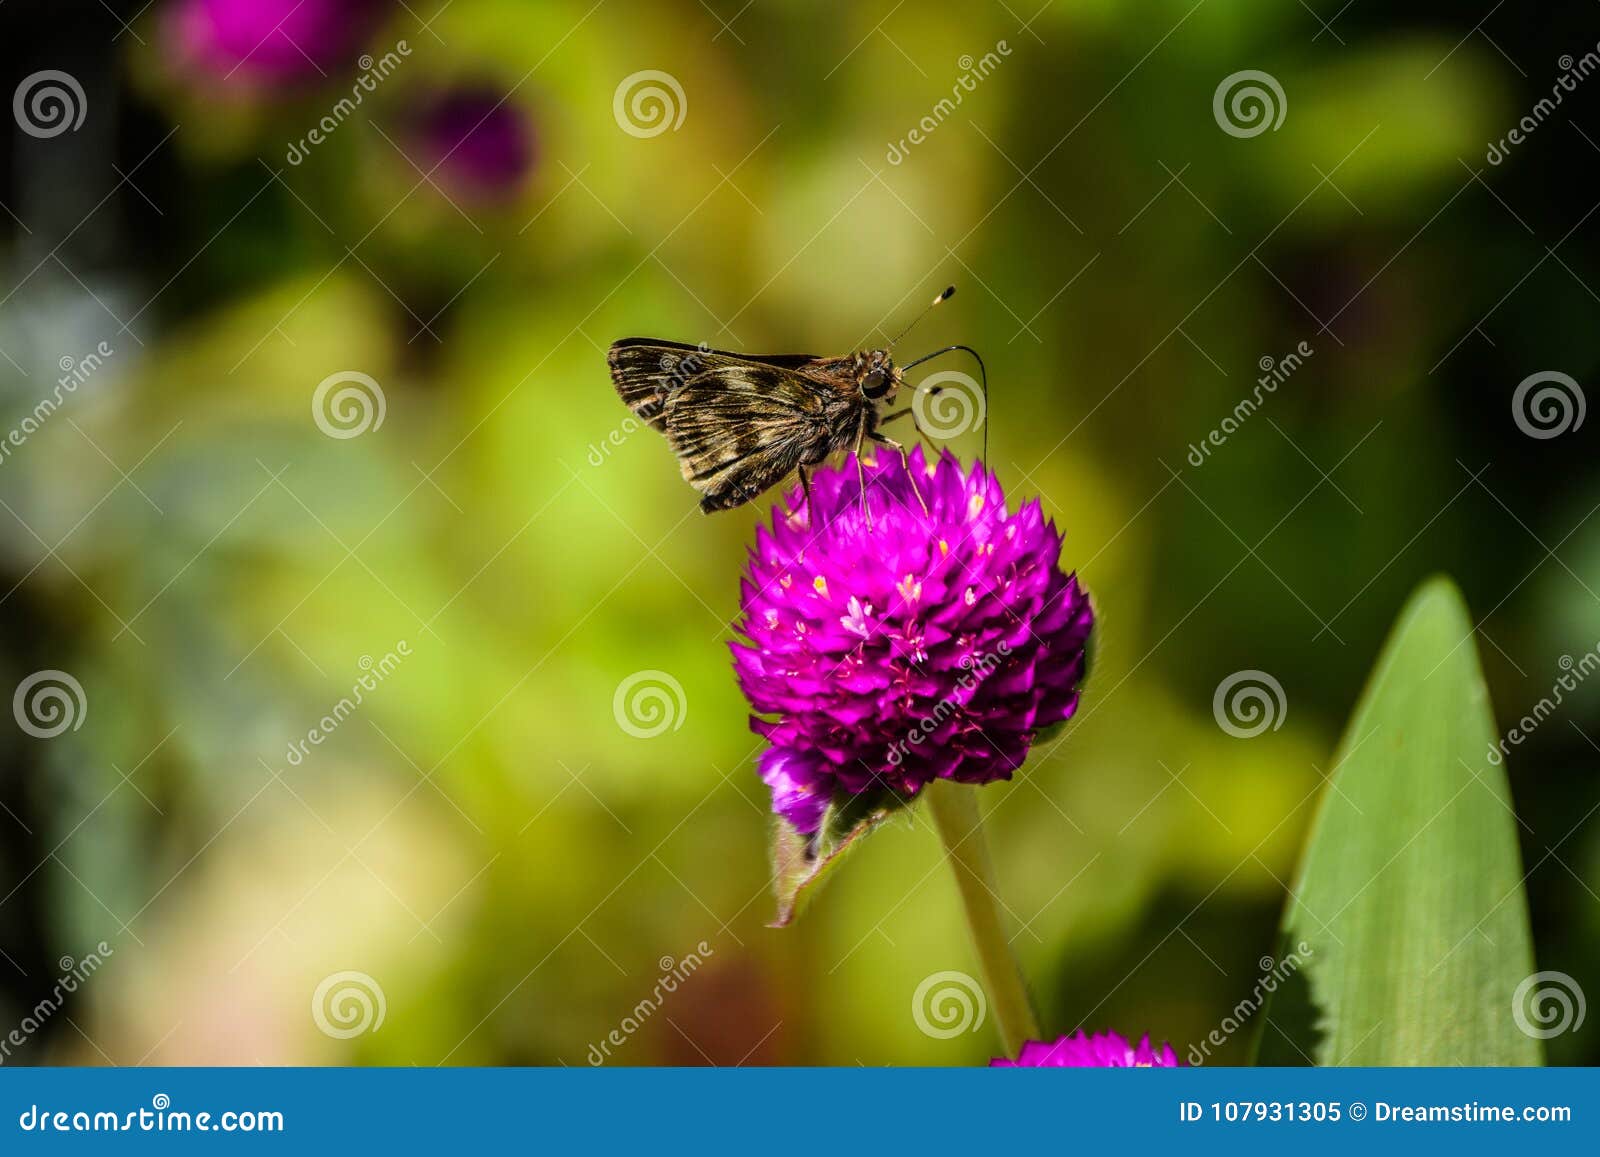 Να ταΐσει πεταλούδων με το λουλούδι. μπορείτε να παρατηρήσετε με έναν μακρο τρόπο την ομορφιά των φτερών της πεταλούδας καθώς επίσης και ταΐζοντας με το λουλούδι